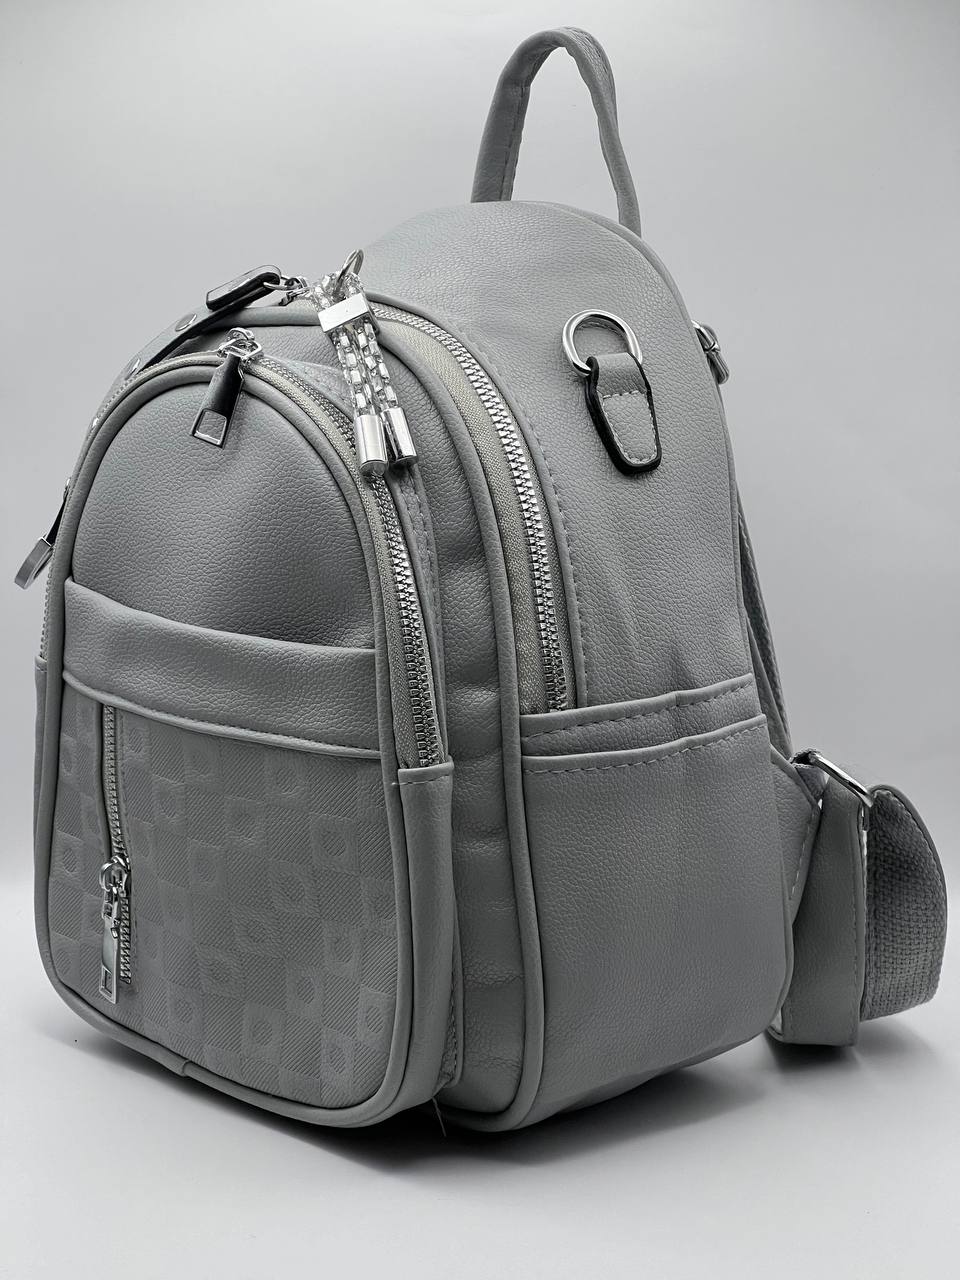 Сумка-рюкзак женская SunGold Р-59605 серая, 27х22х12 см